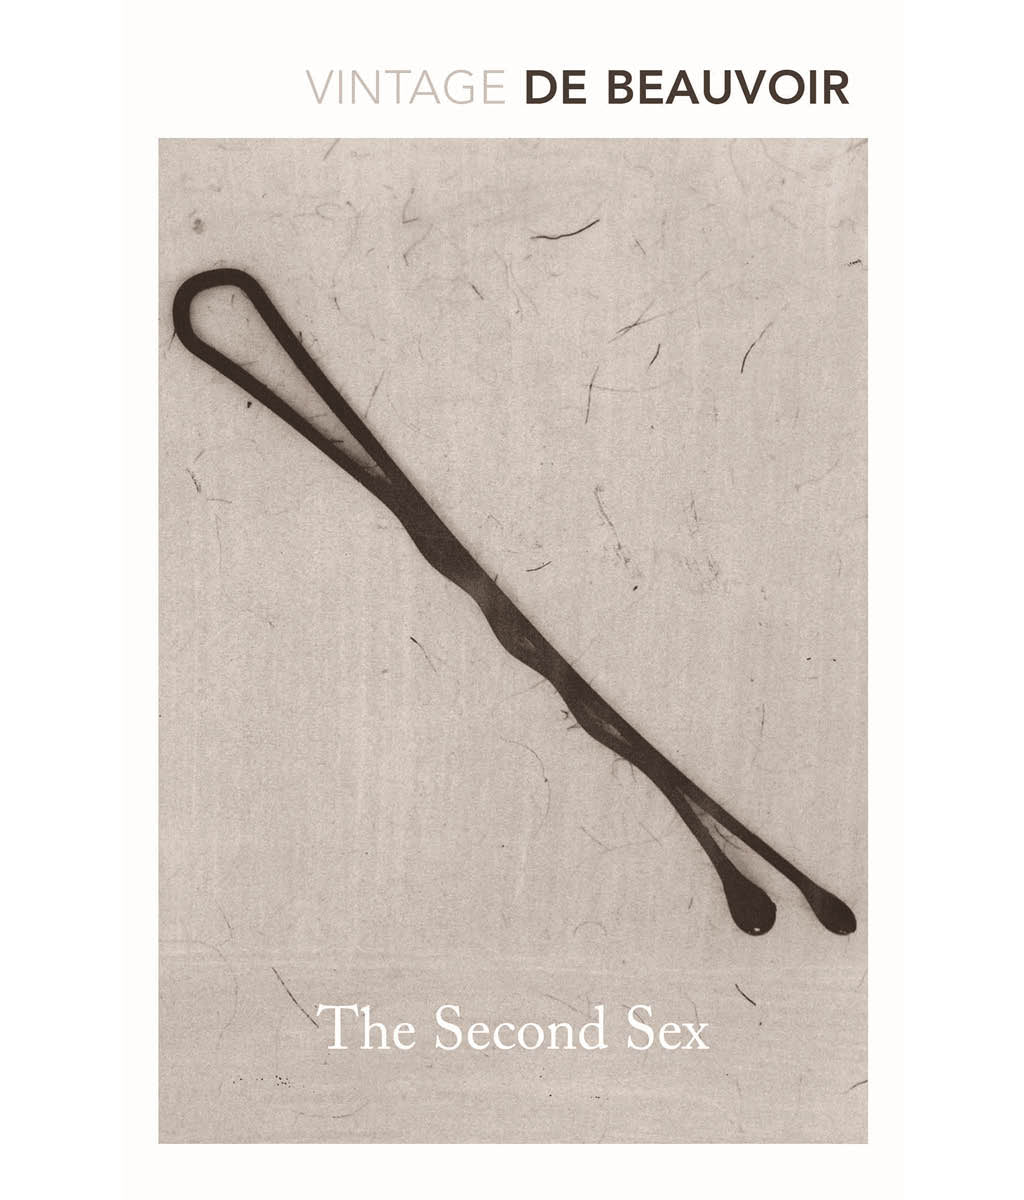 The second sex by Simone de Beuvour